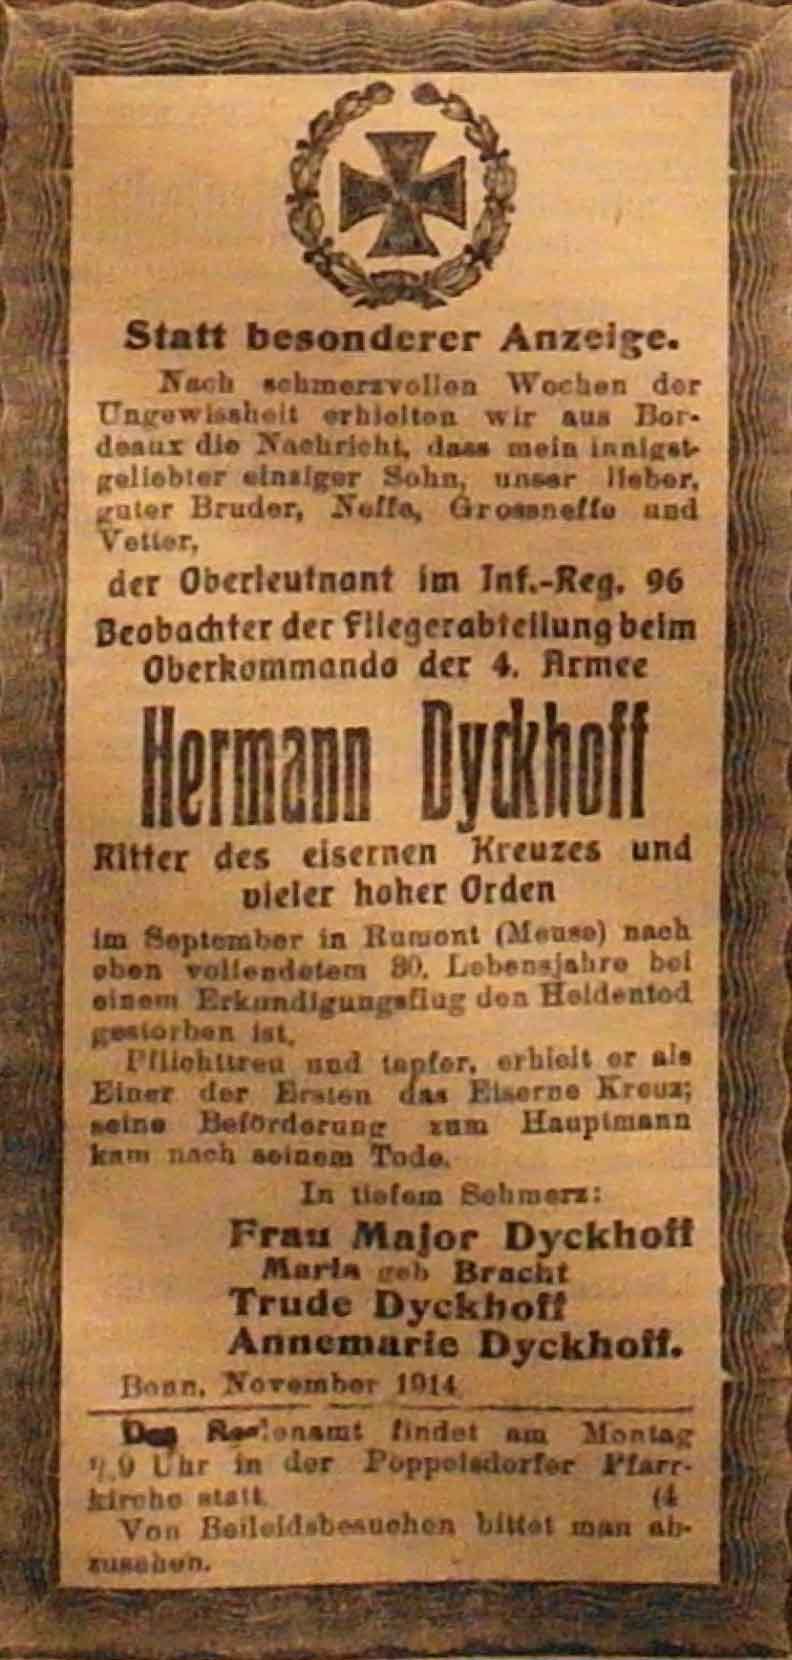 Anzeige im General-Anzeiger vom 19. November 1914